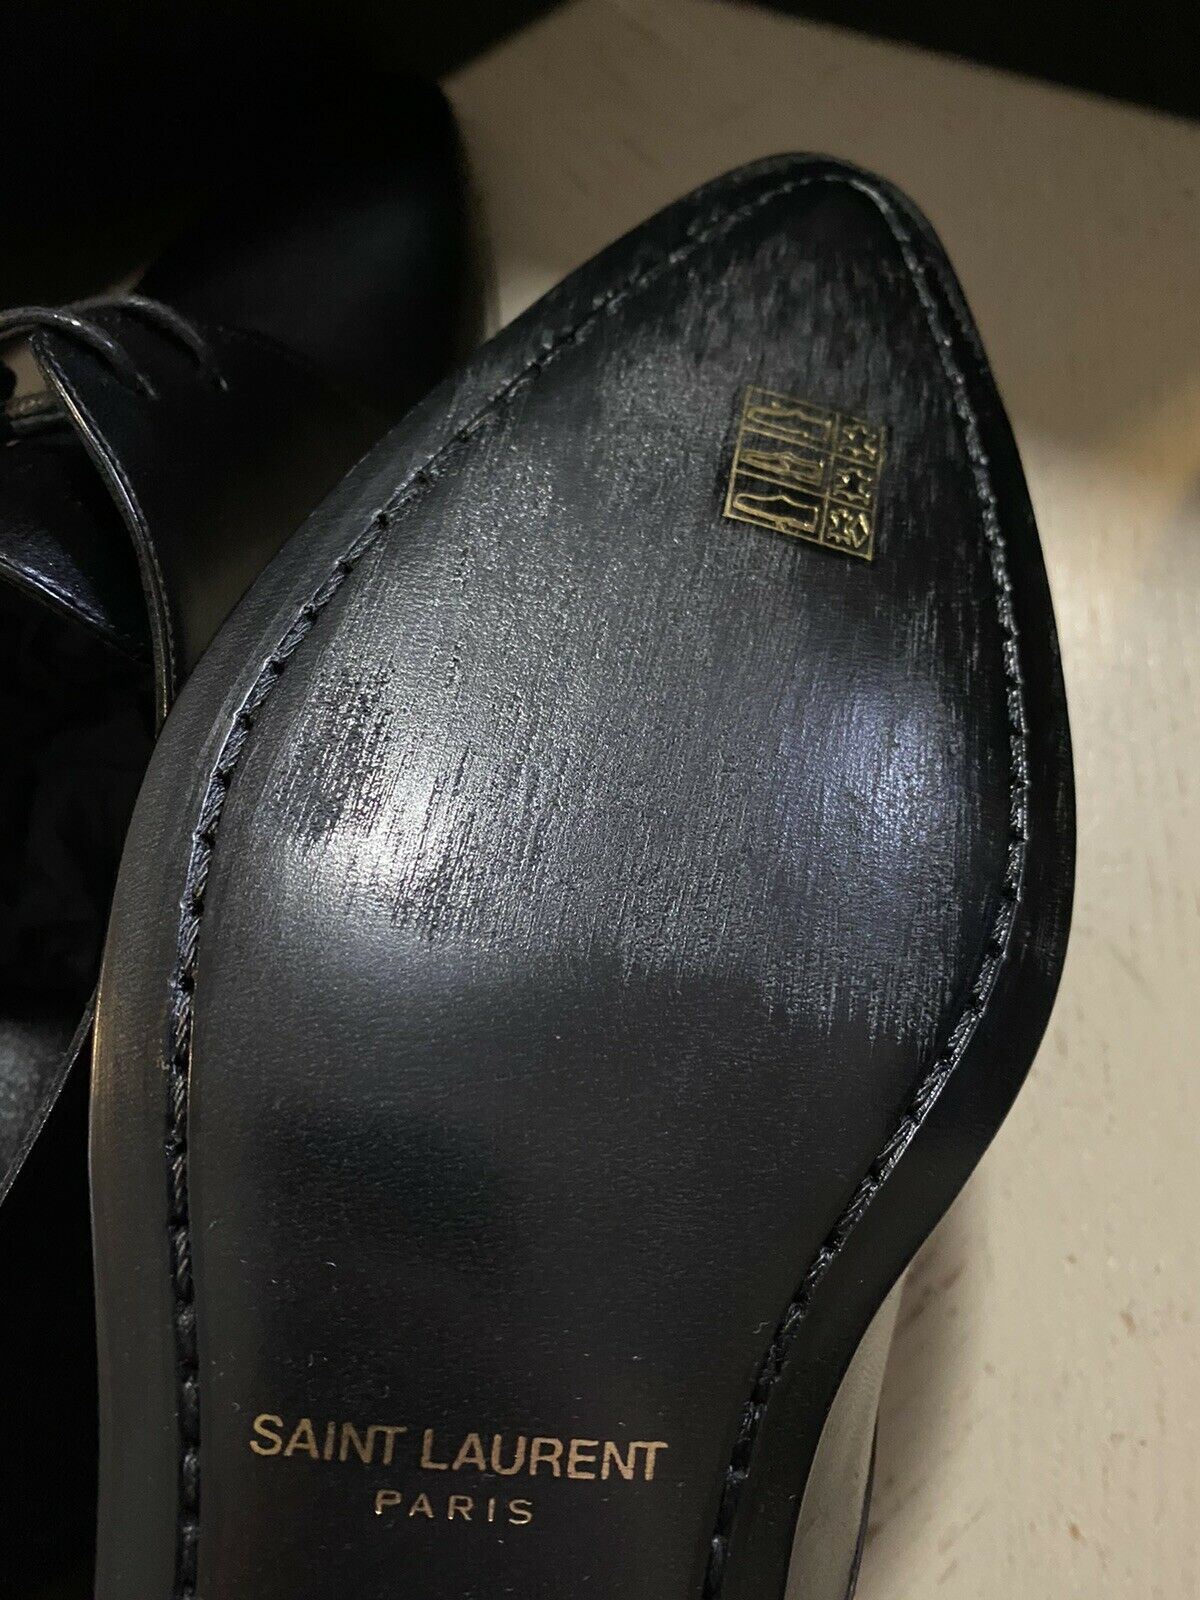 NIB $795 Мужские кожаные классические туфли Saint Laurent черные 10 США/43 ЕС Италия